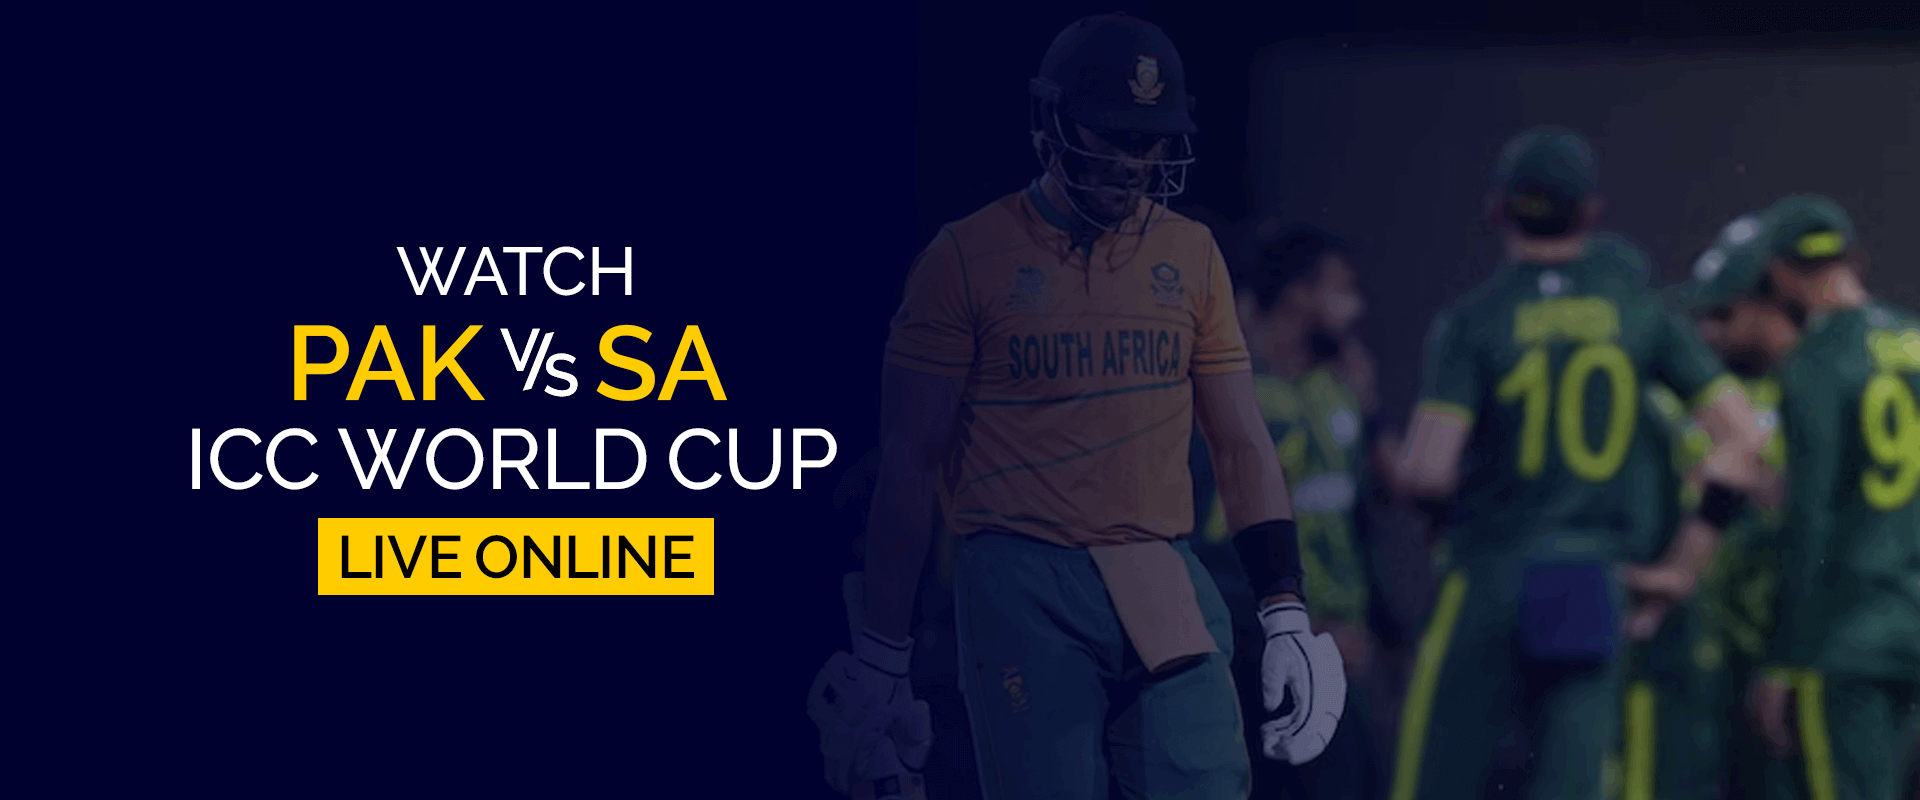 Kuckt Pakistan vs Südafrika ICC Weltmeeschterschaft Live Online